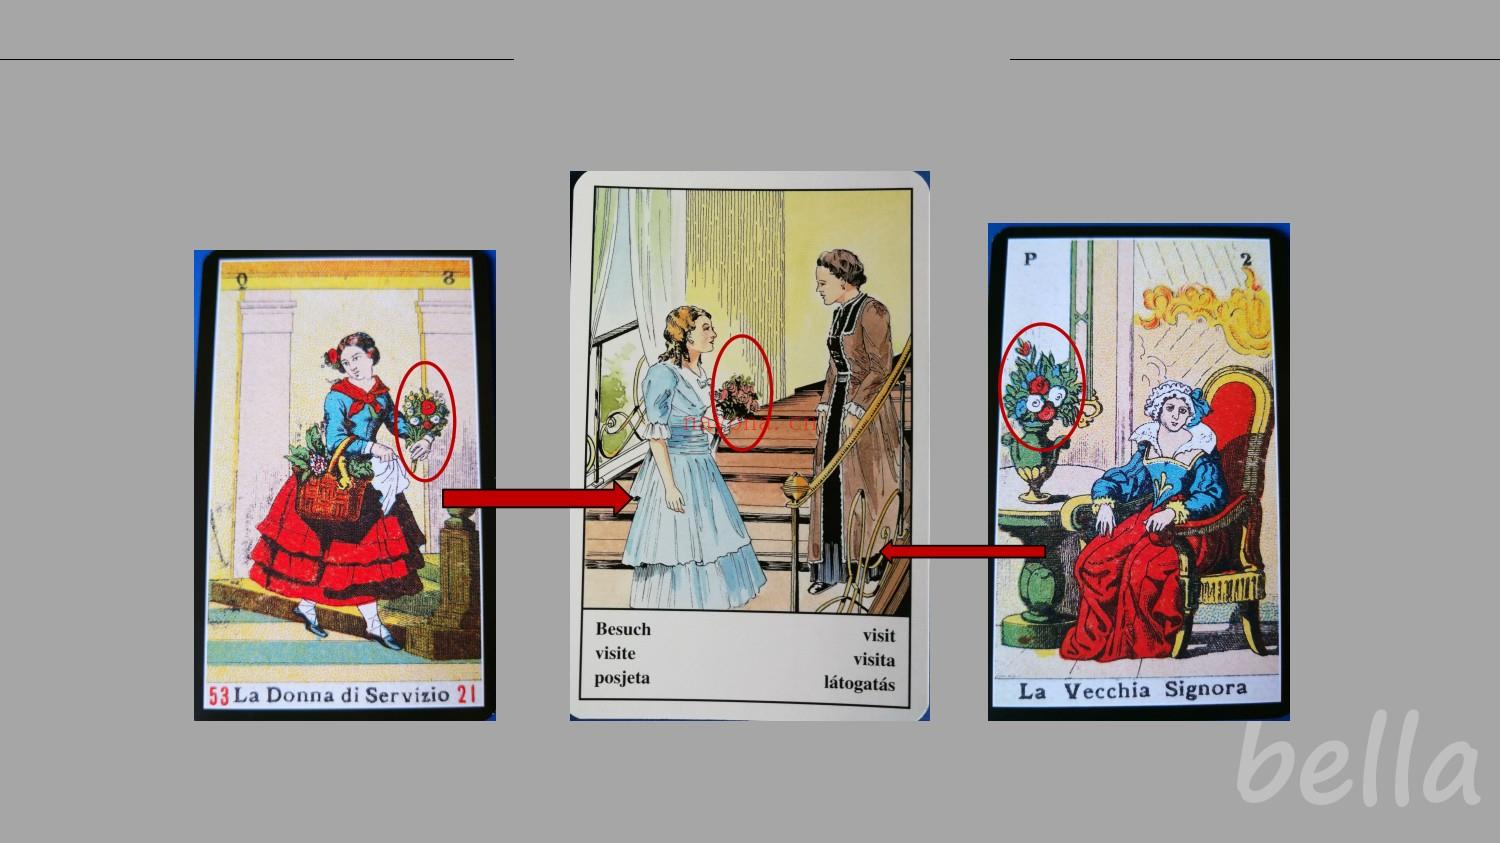 (稀缺牌卡好课)西比拉神谕卡课程 音频课程+详细课件 西拉比牌源起于18世纪到19世纪之间的法国。这种占卜艺术当风靡一时，几乎在任何地方都可以看到，尤其是在宫廷，文学或者知识分子的沙龙中。一开始，占卜用的是一副极其简单的牌，这幅牌称被为“法国花色”（心红♥  方块♦  梅花♣  桃黑♠）随着时间的推移，这些普通的卡片开始加入了绘描日常生活场景的图。由此，这些牌开始与我们的日常生活产生联系。而后，每一张牌都被赋予行的含义，或是一些关键词，或是一句两短语。每张牌都开始了有了自己的关键词，并以此成为每张牌的自身特征，以此也区分不同的牌面含义。这样，西拉比就有了初步的牌义。